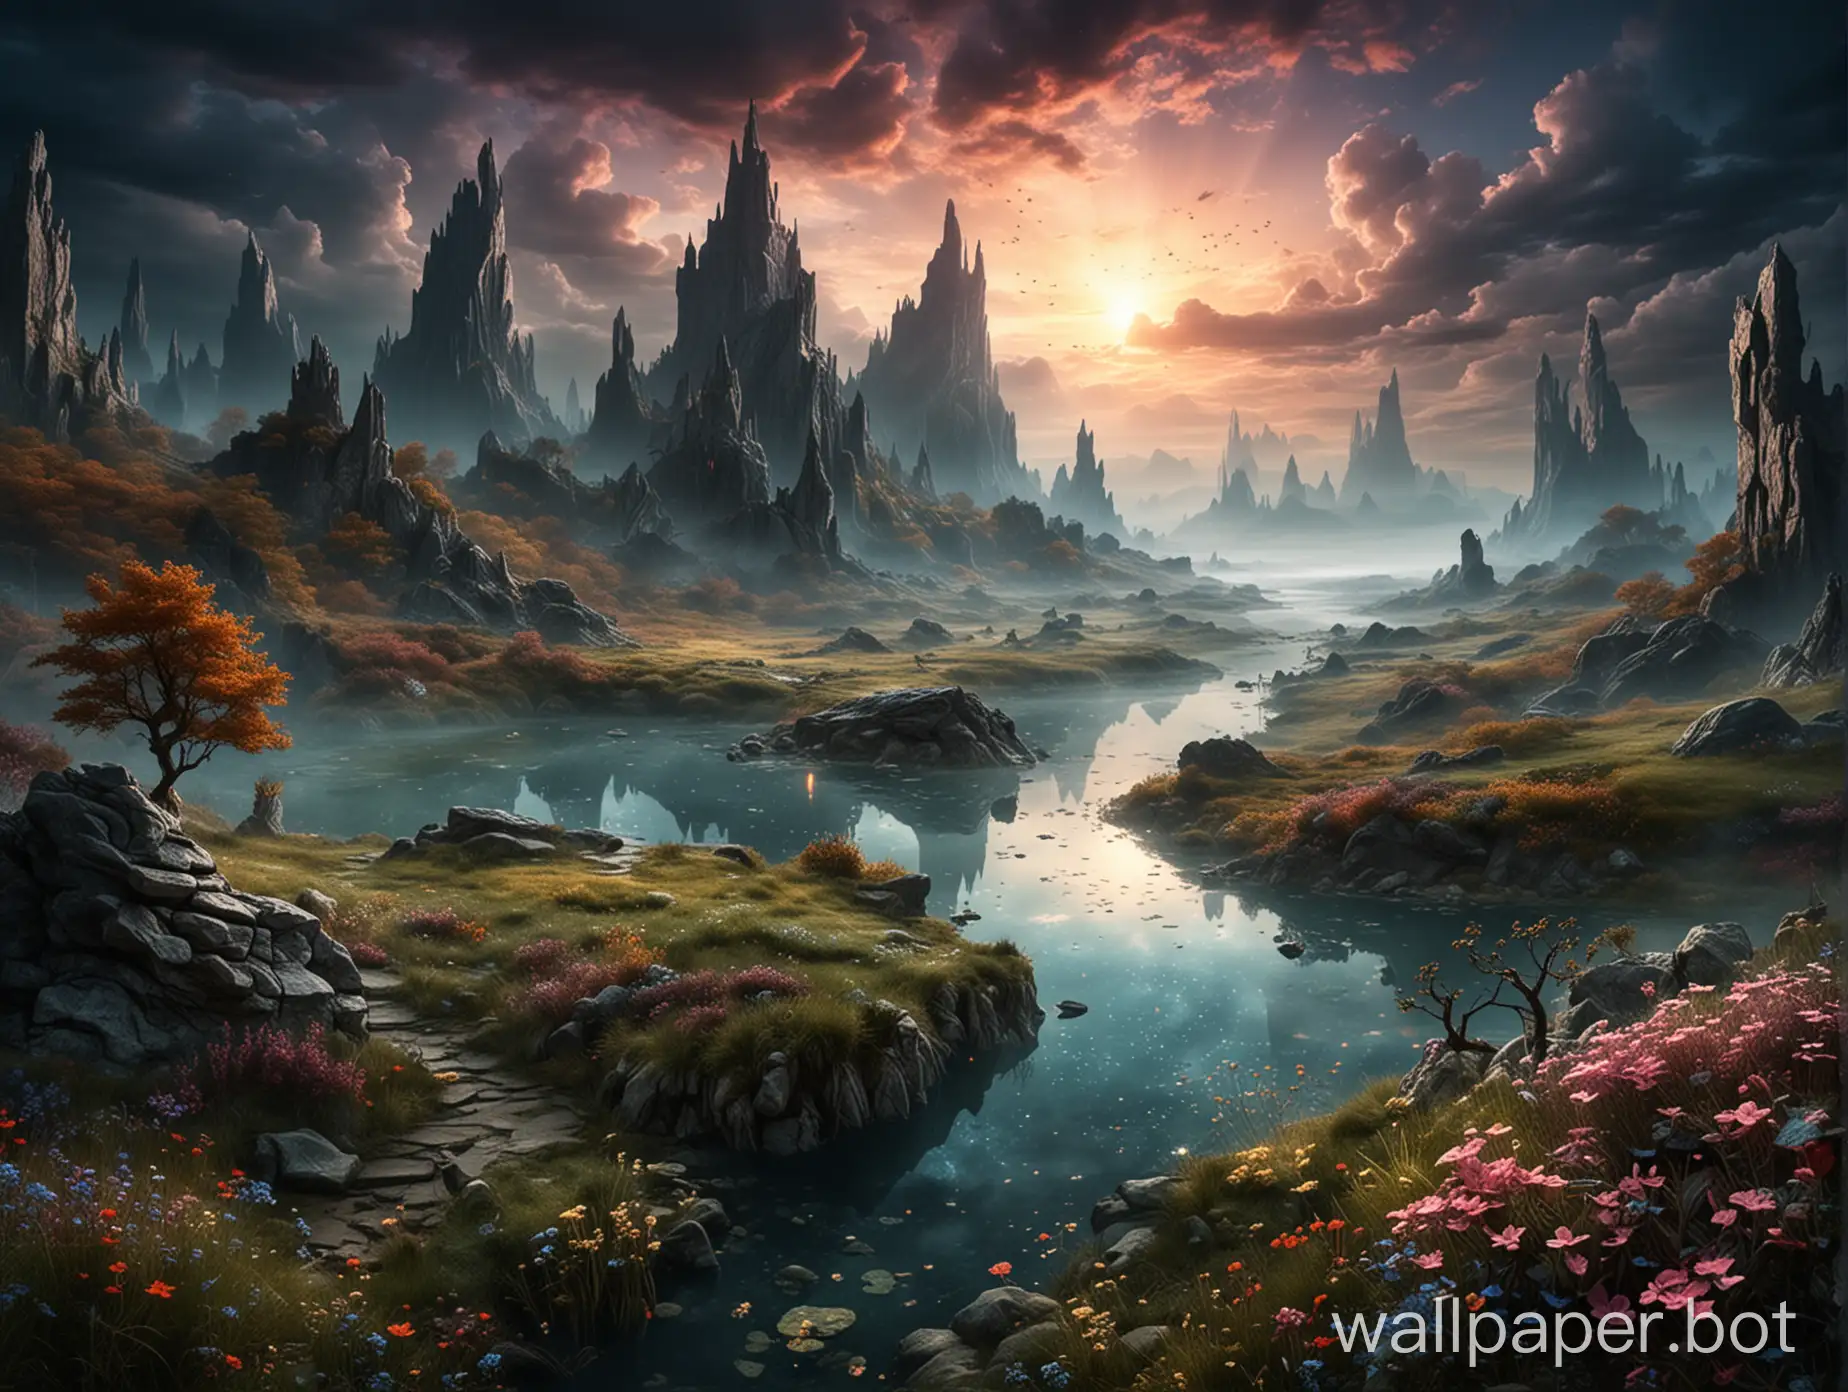 Mystical landscape